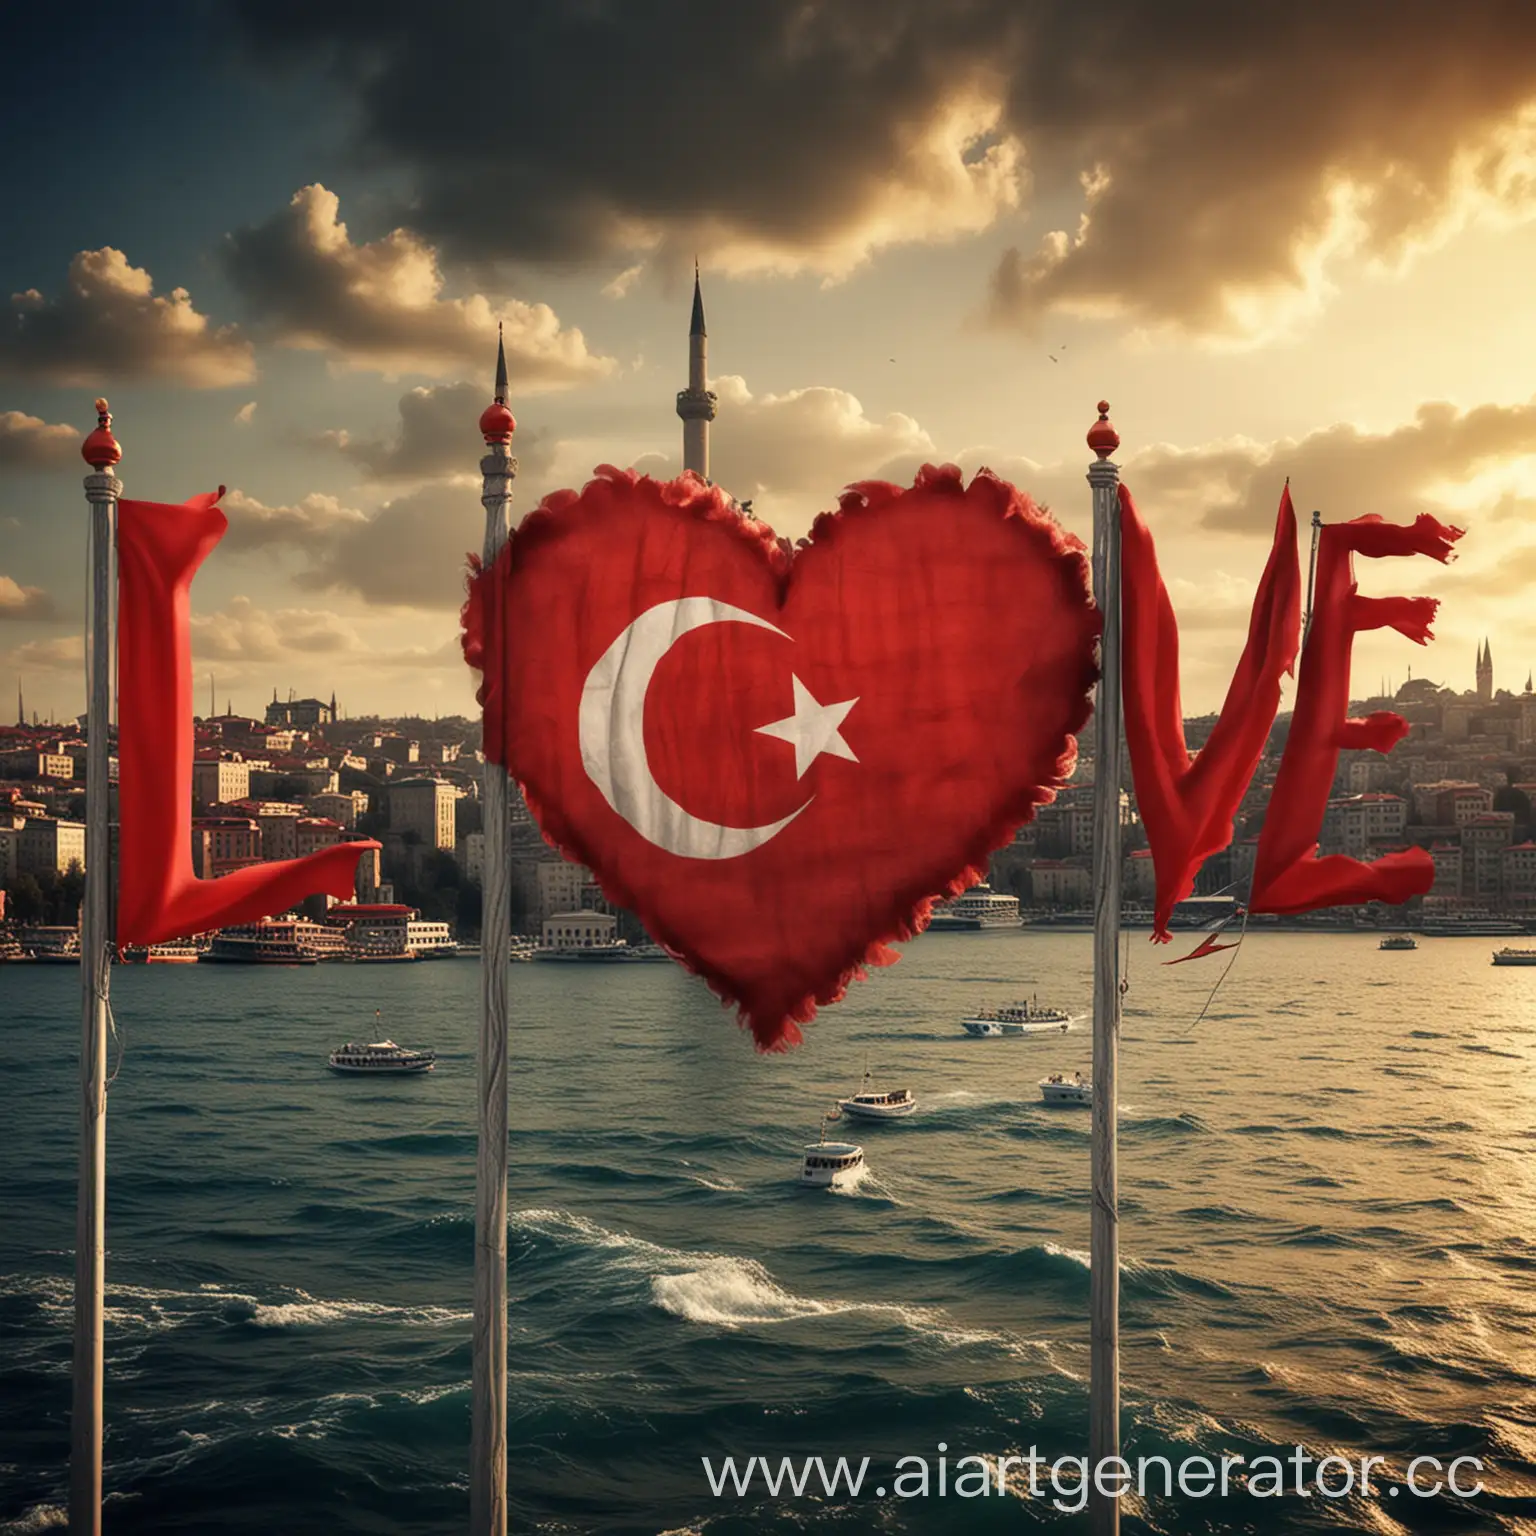 сгенирируй картинку на тему 
турецкий язык, любовь. пусть присутствует флаг, виды стамбула, ассоциации с турцией, 
